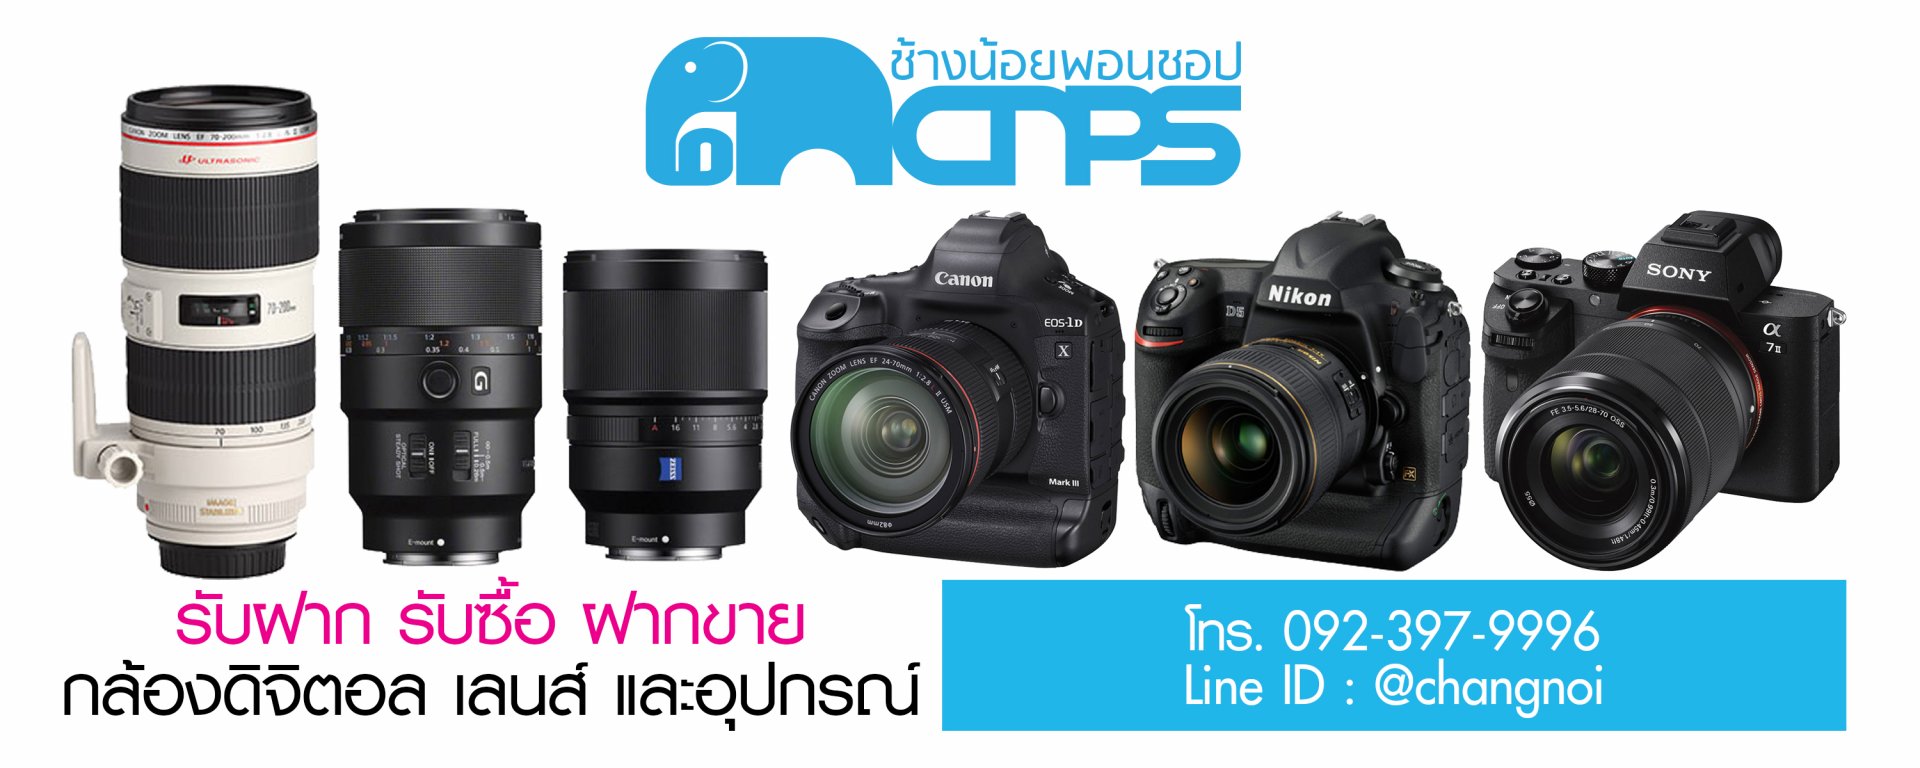 รับซื้อ รับจำนำ กล้องดิจิตอล เลนส์ Lens นิคอน Nikon ให้ราคาสูง